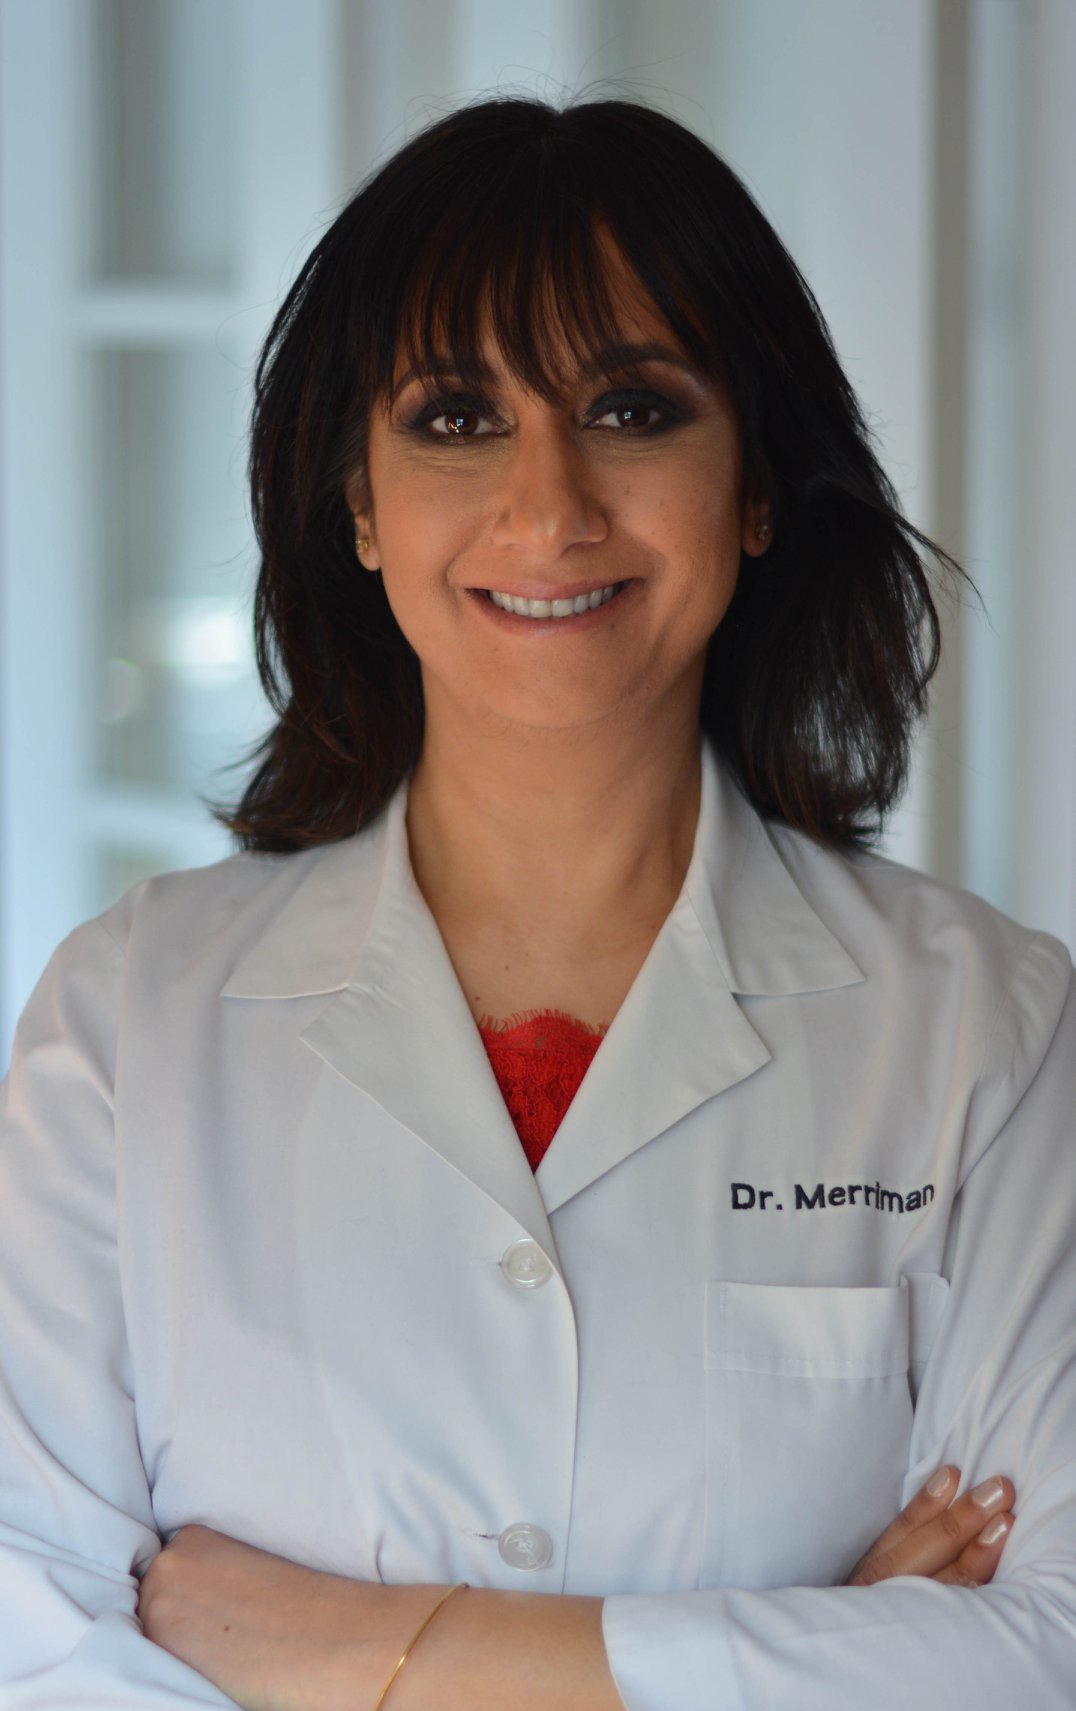 Dr. Merriman